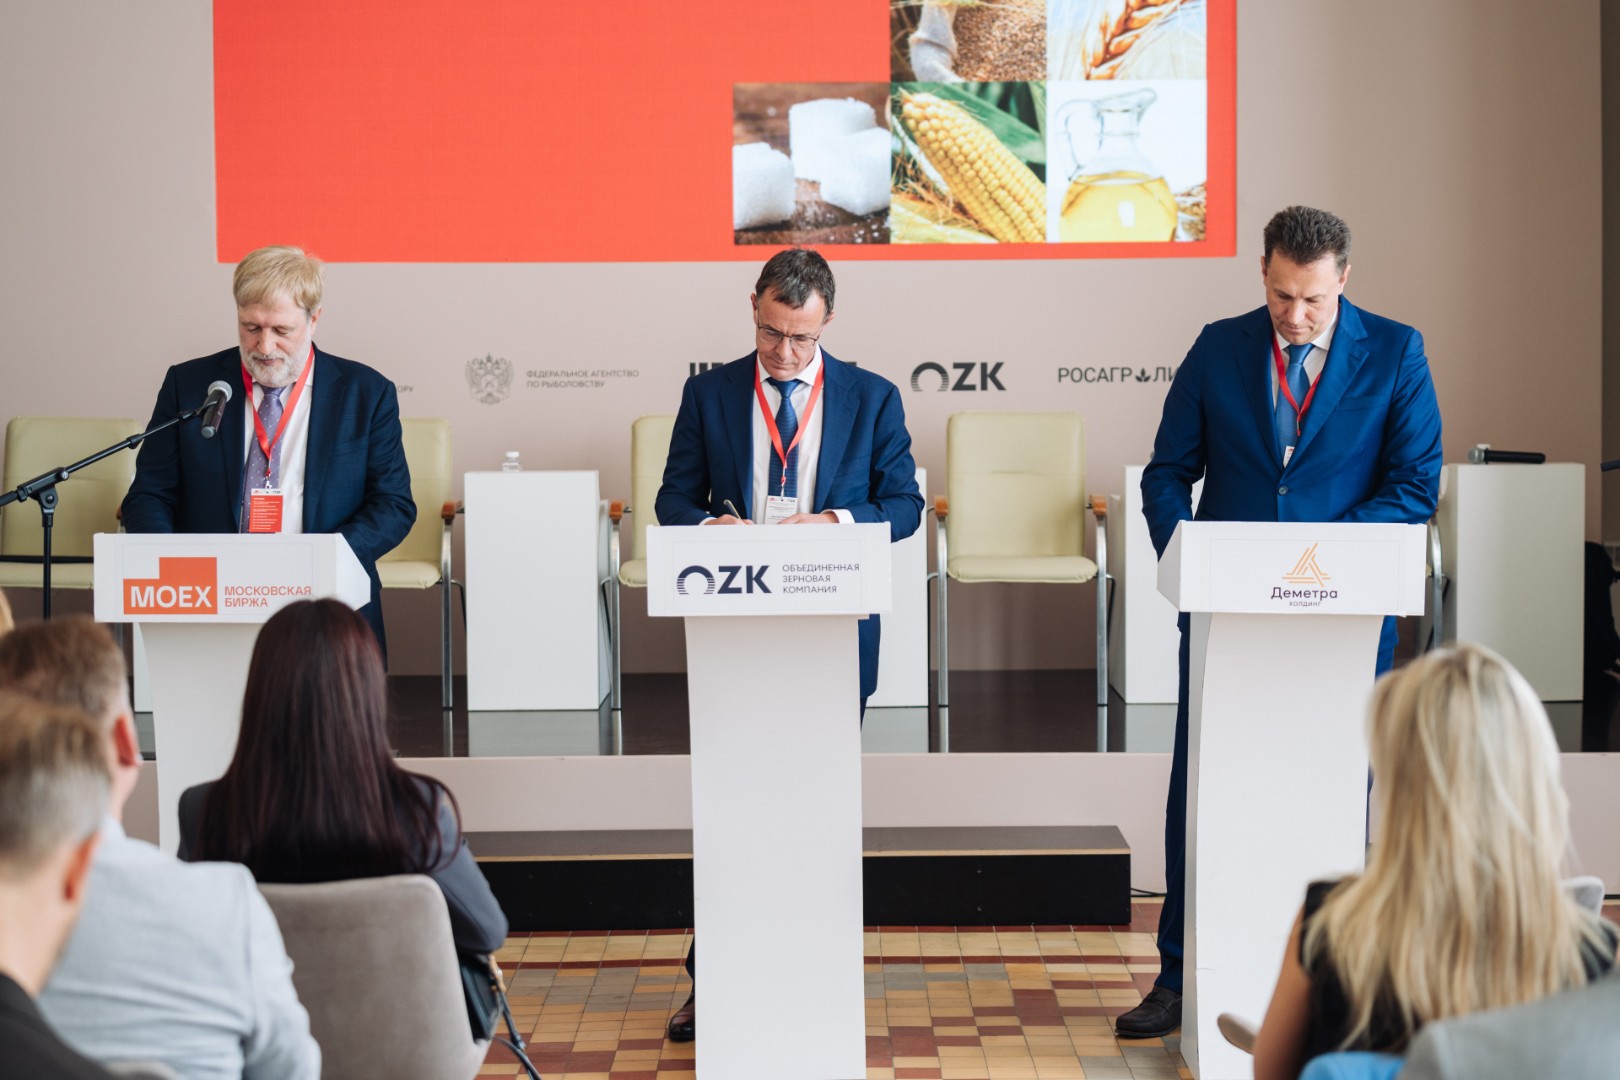 Московская биржа, Группа ОЗК и «Деметра-Холдинг» договорились о сотрудничестве